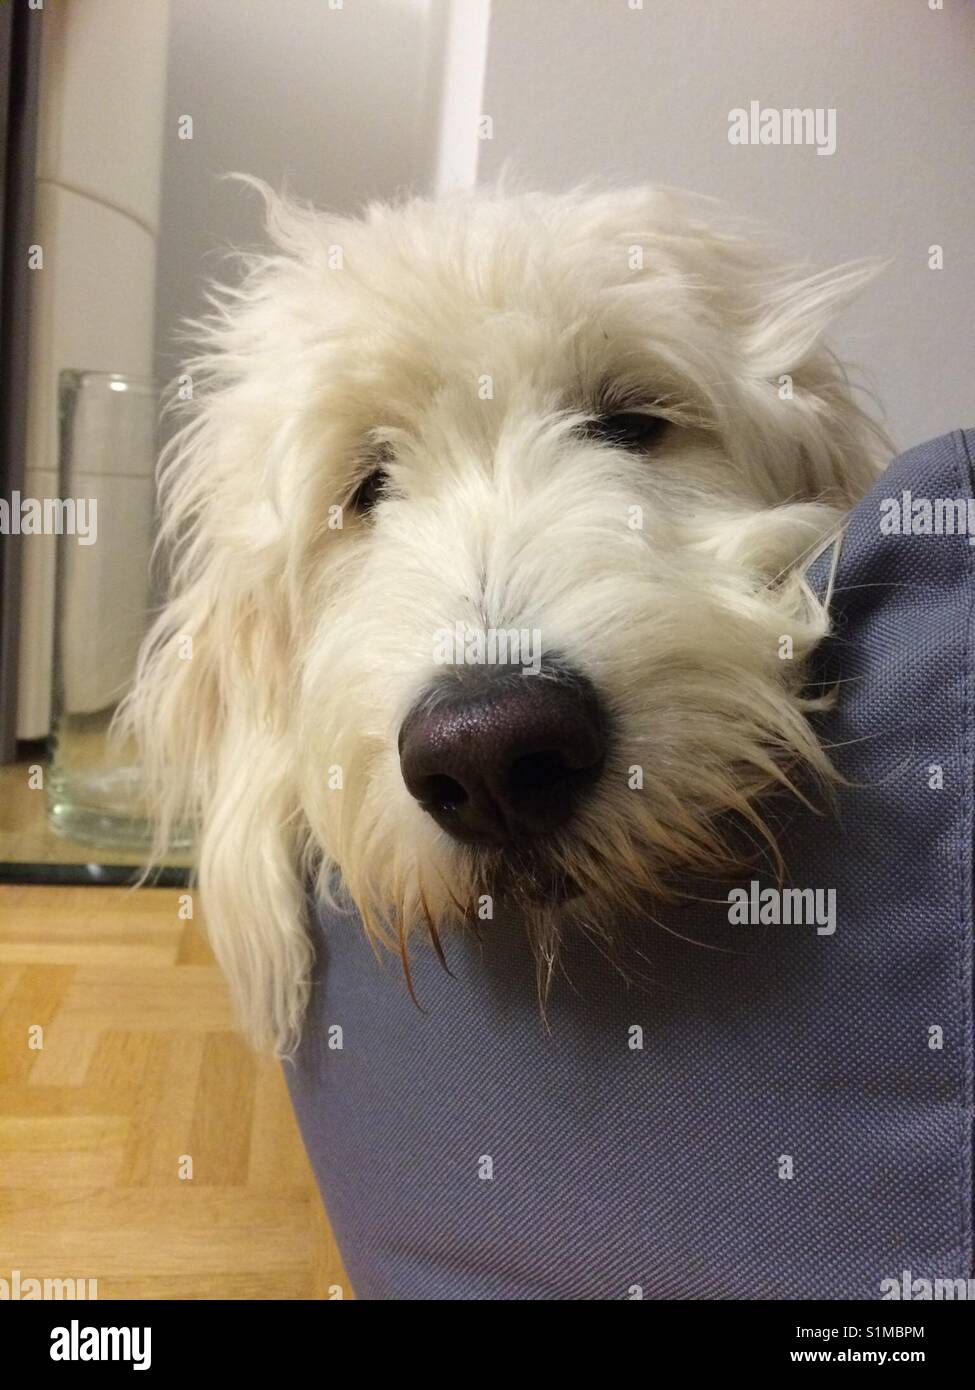 Goldendoodle nel letto dreambay, cane bianco, nero naso, weisser Hund guckt in die Kamera im liegend Hundebett auf Parkettboden Foto Stock